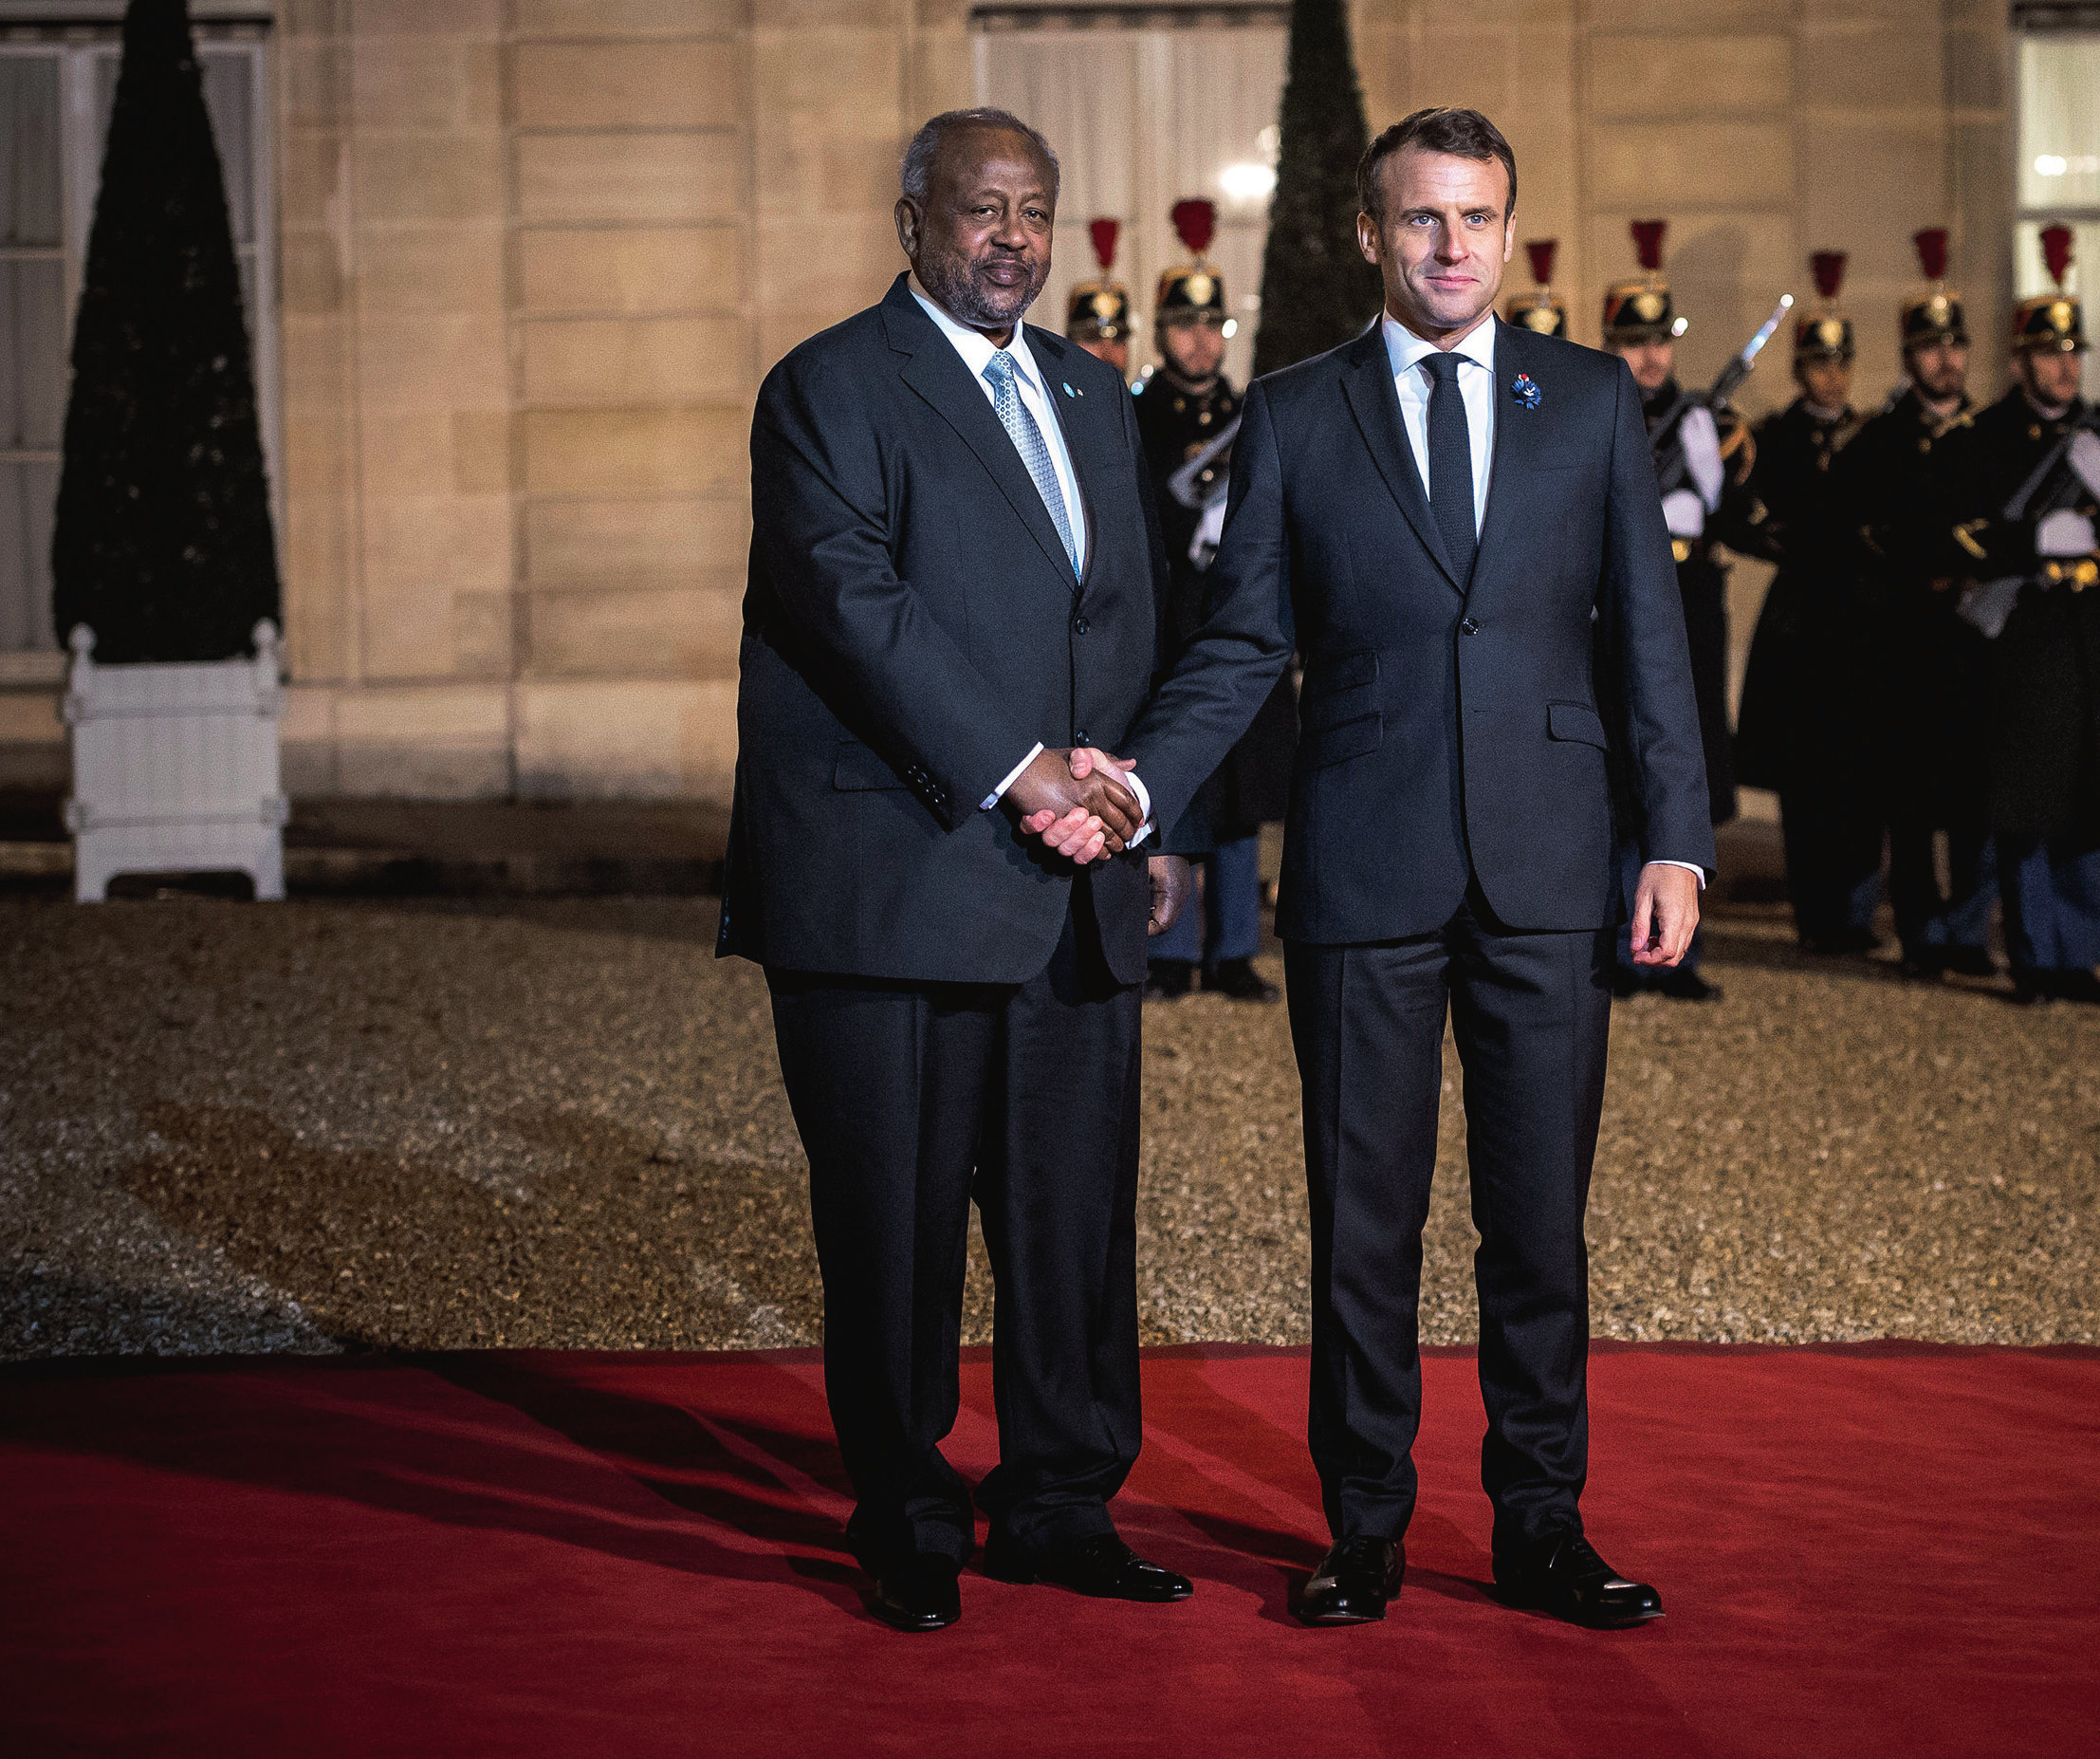 À l’international, que ce soit avec la Chine, la France ou les États-Unis, le président Guelleh maintient des liens diplomatiques forts. Ici, avec Emmanuel Macron.NICOLAS MESSYASZ/HANS LUCAS